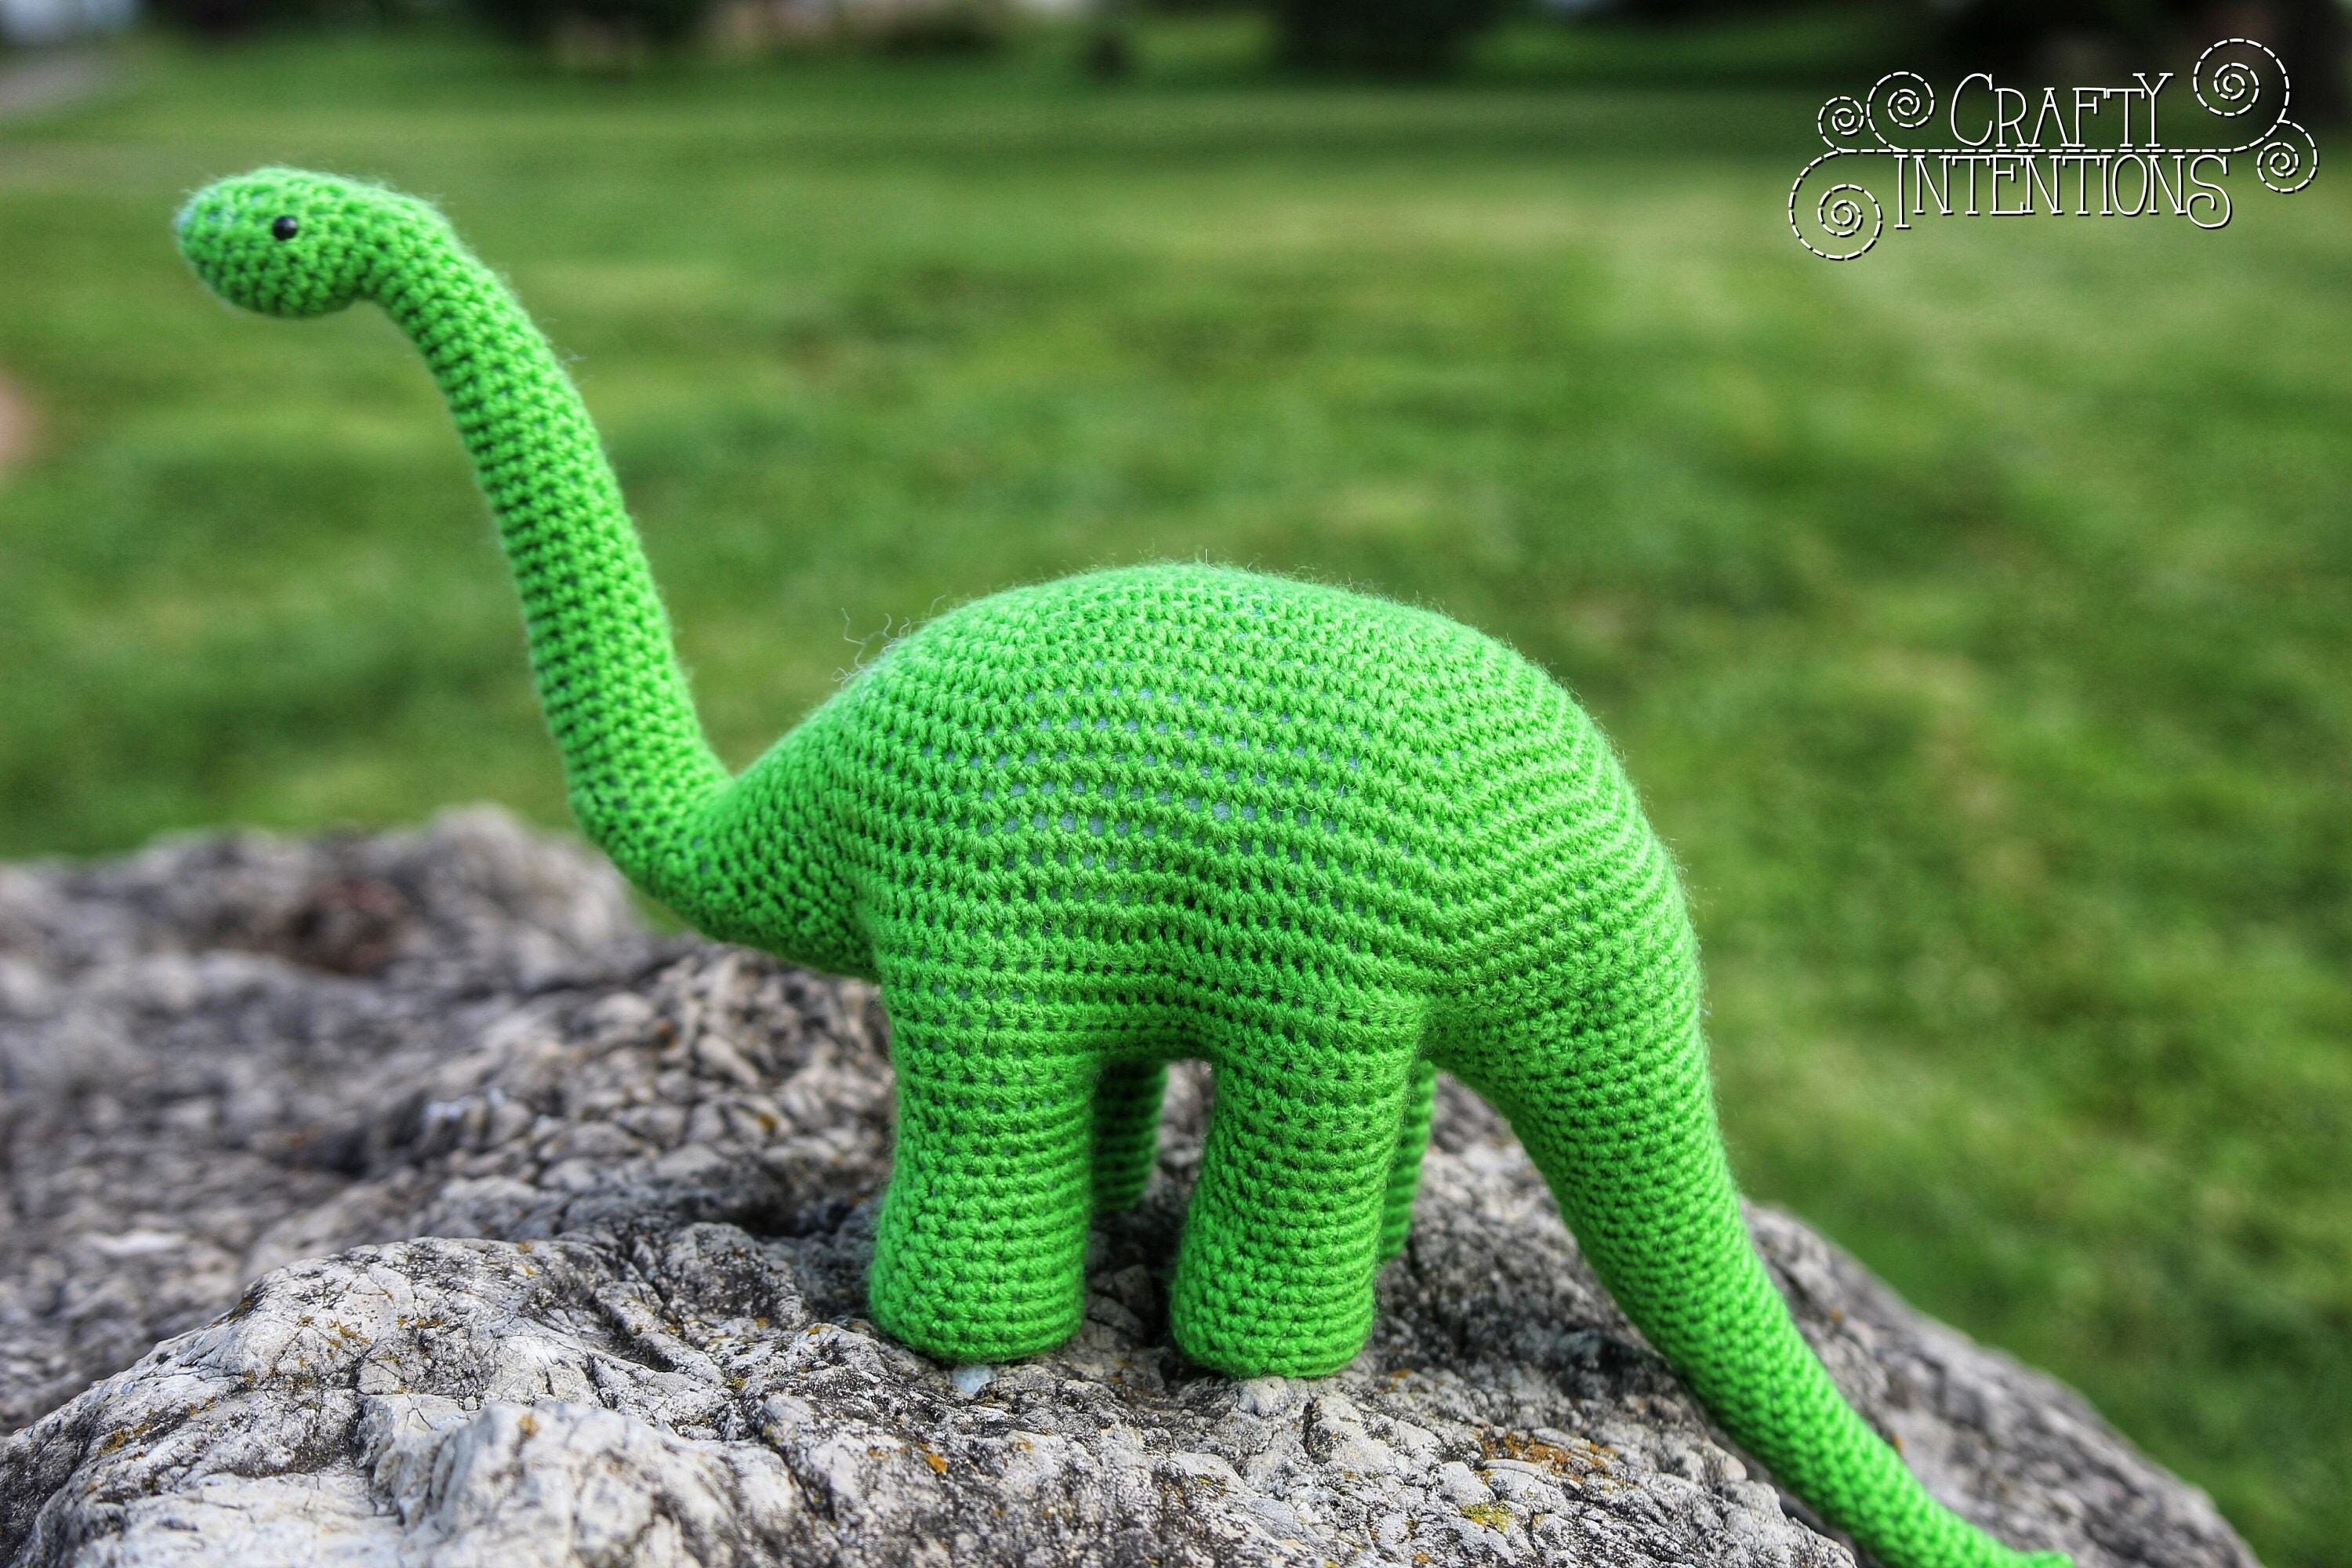 Bright Green Long Neck Dinosaur Crochet Amigurumi by Crafty Intentions